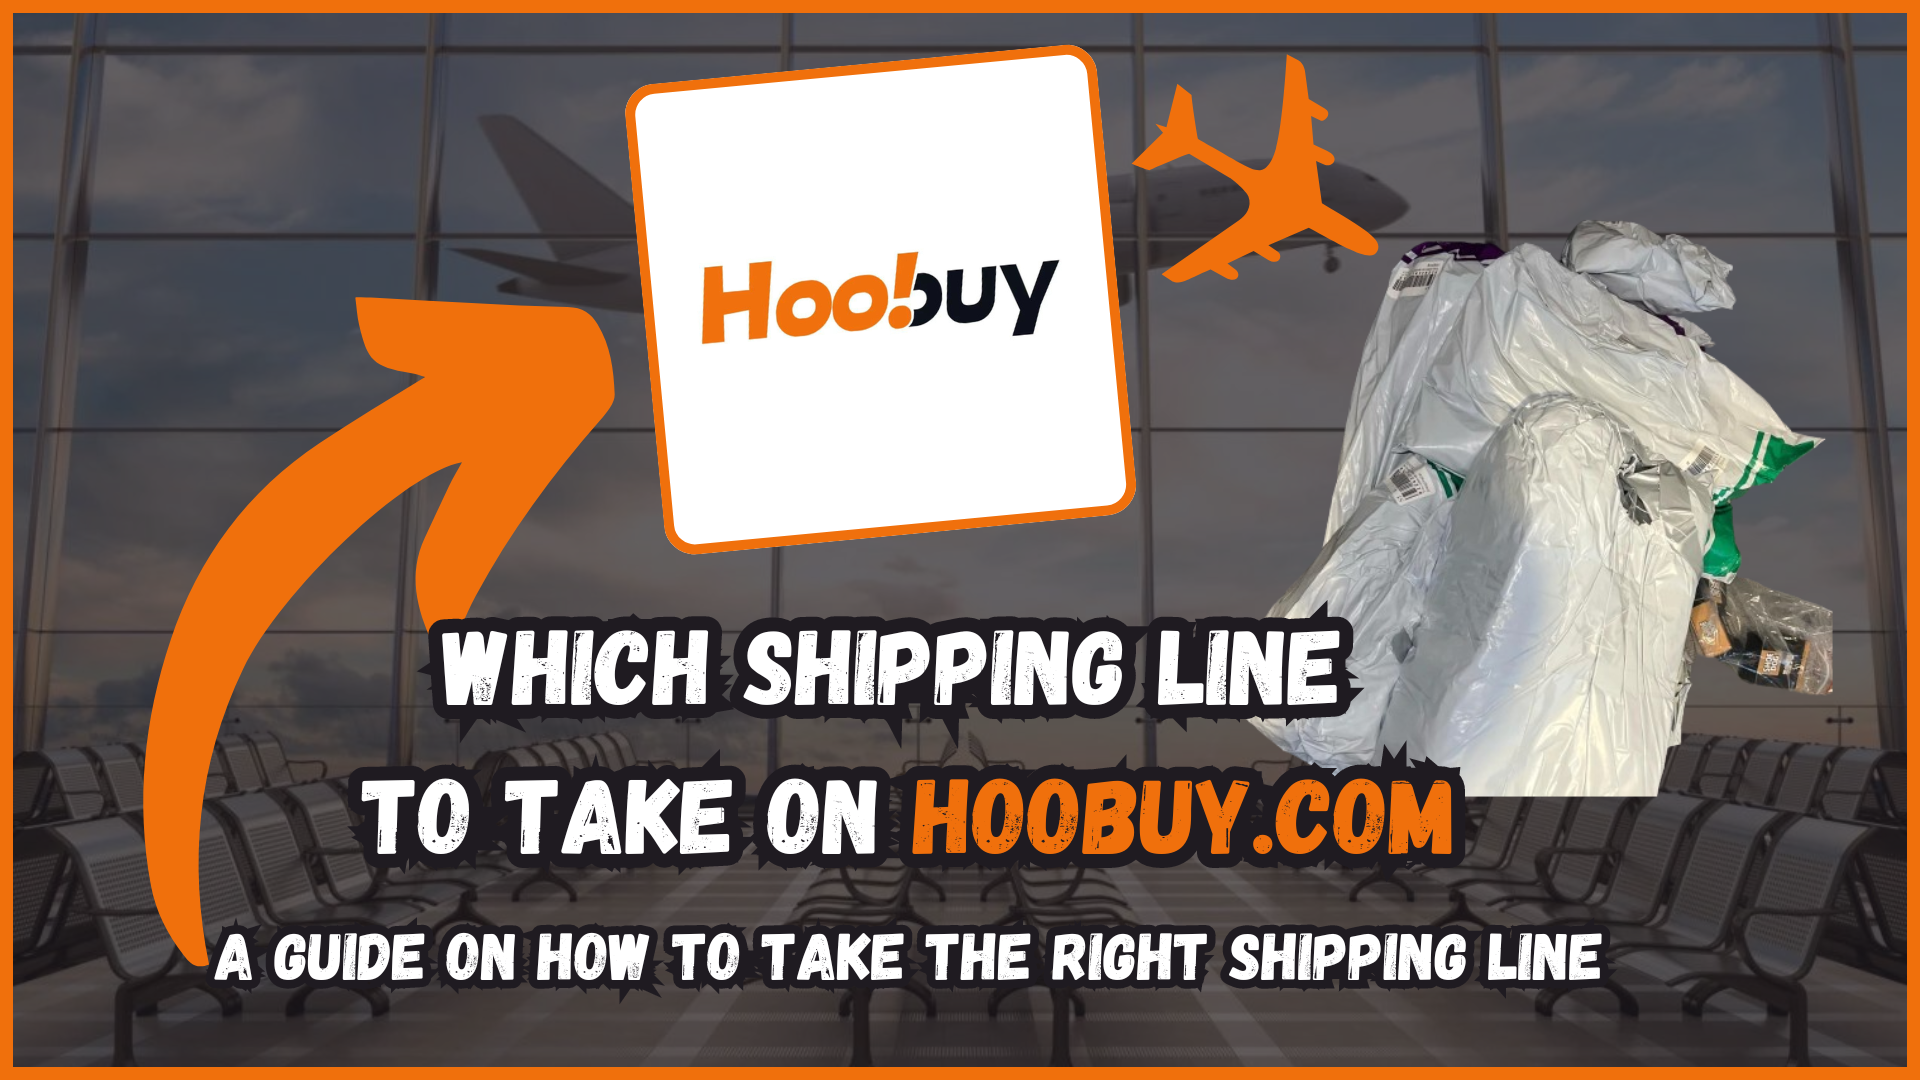 Article: Hoobuy Shipping Guide